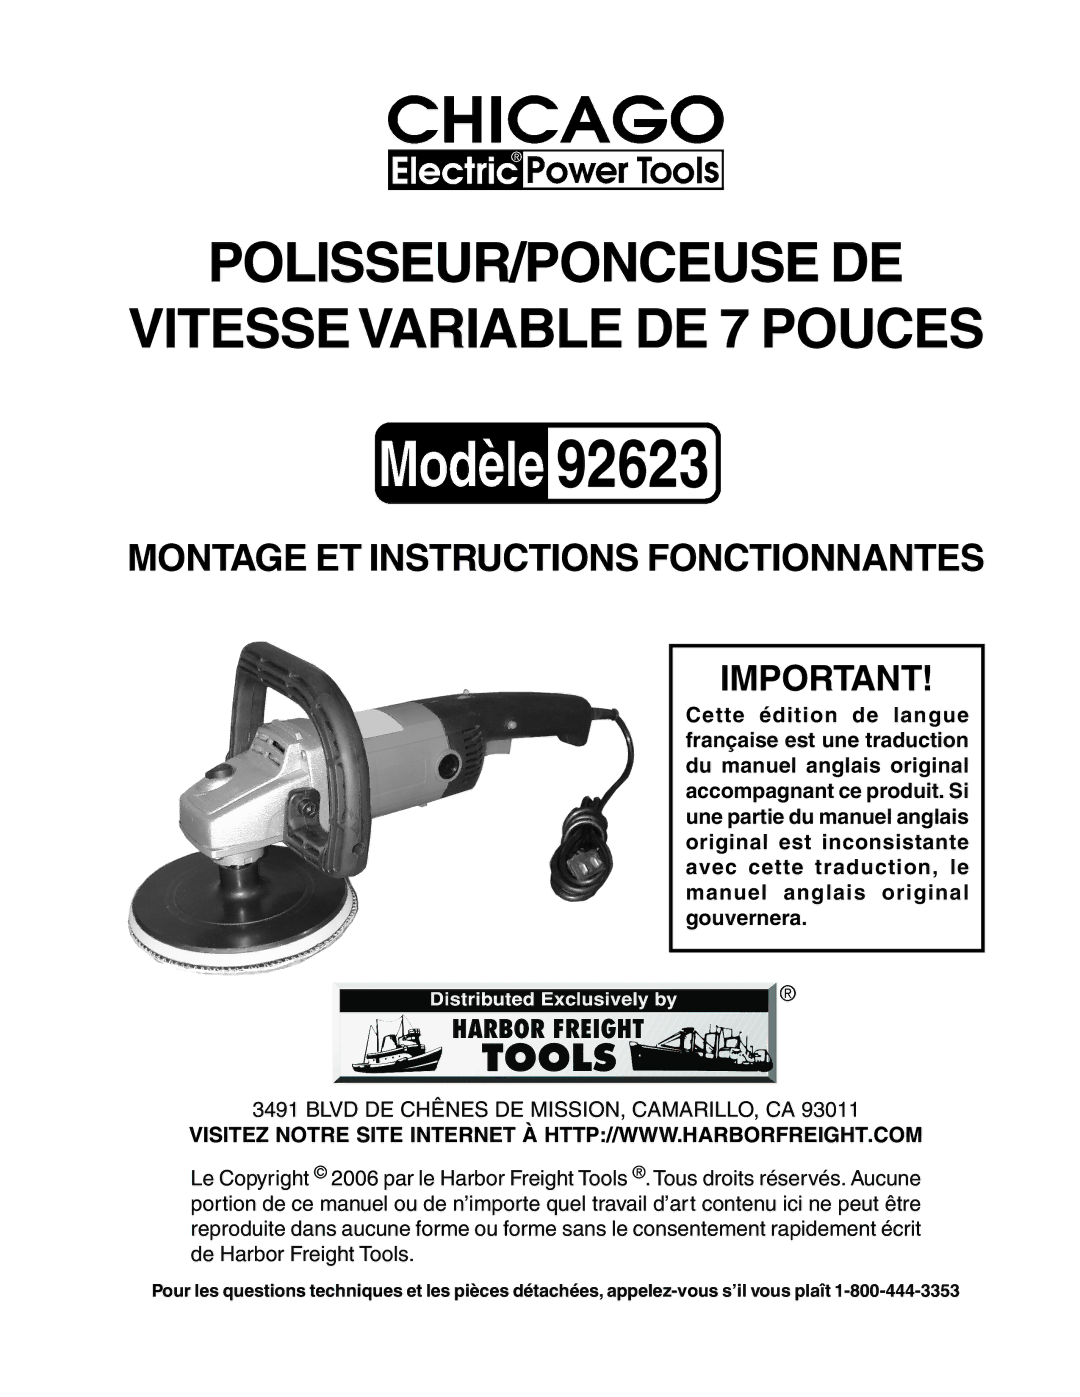 Harbor Freight Tools 92623 operating instructions POLISSEUR/PONCEUSE DE Vitesse Variable DE 7 Pouces 